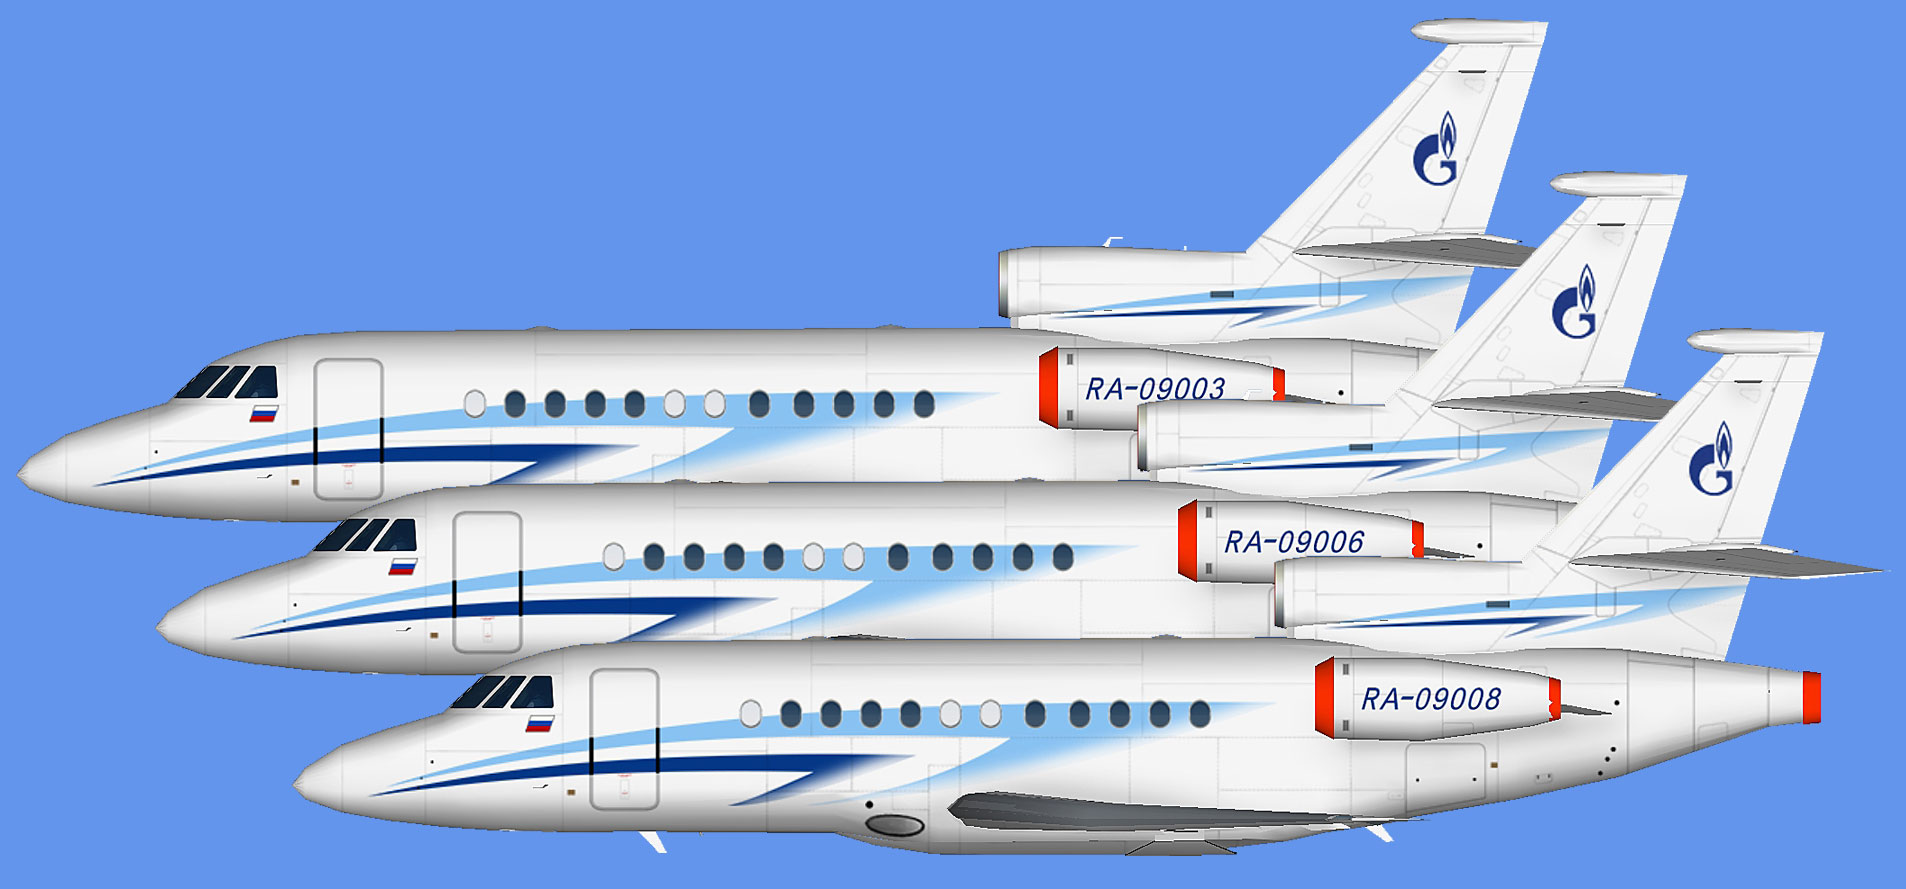 Gazpromavia Dassault Falcon 900EX